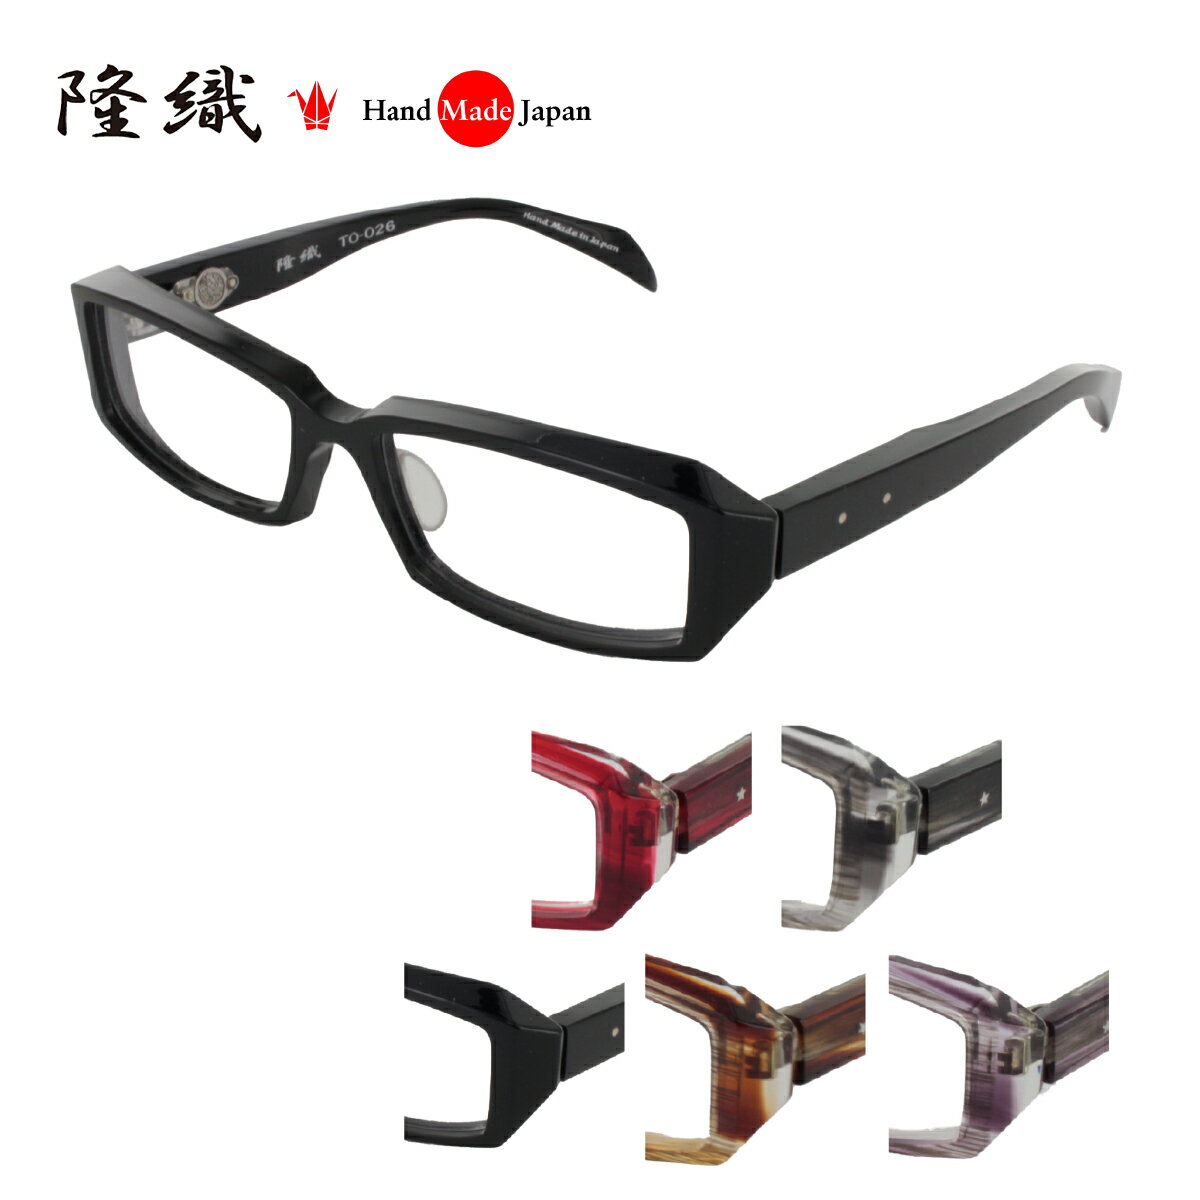  TO-026 メガネフレーム メガネ 眼鏡 度付き 57サイズ 日本製 職人 スタイリッシュ おしゃれ 新品 フレーム 伊達メガネ こだわり 正規品